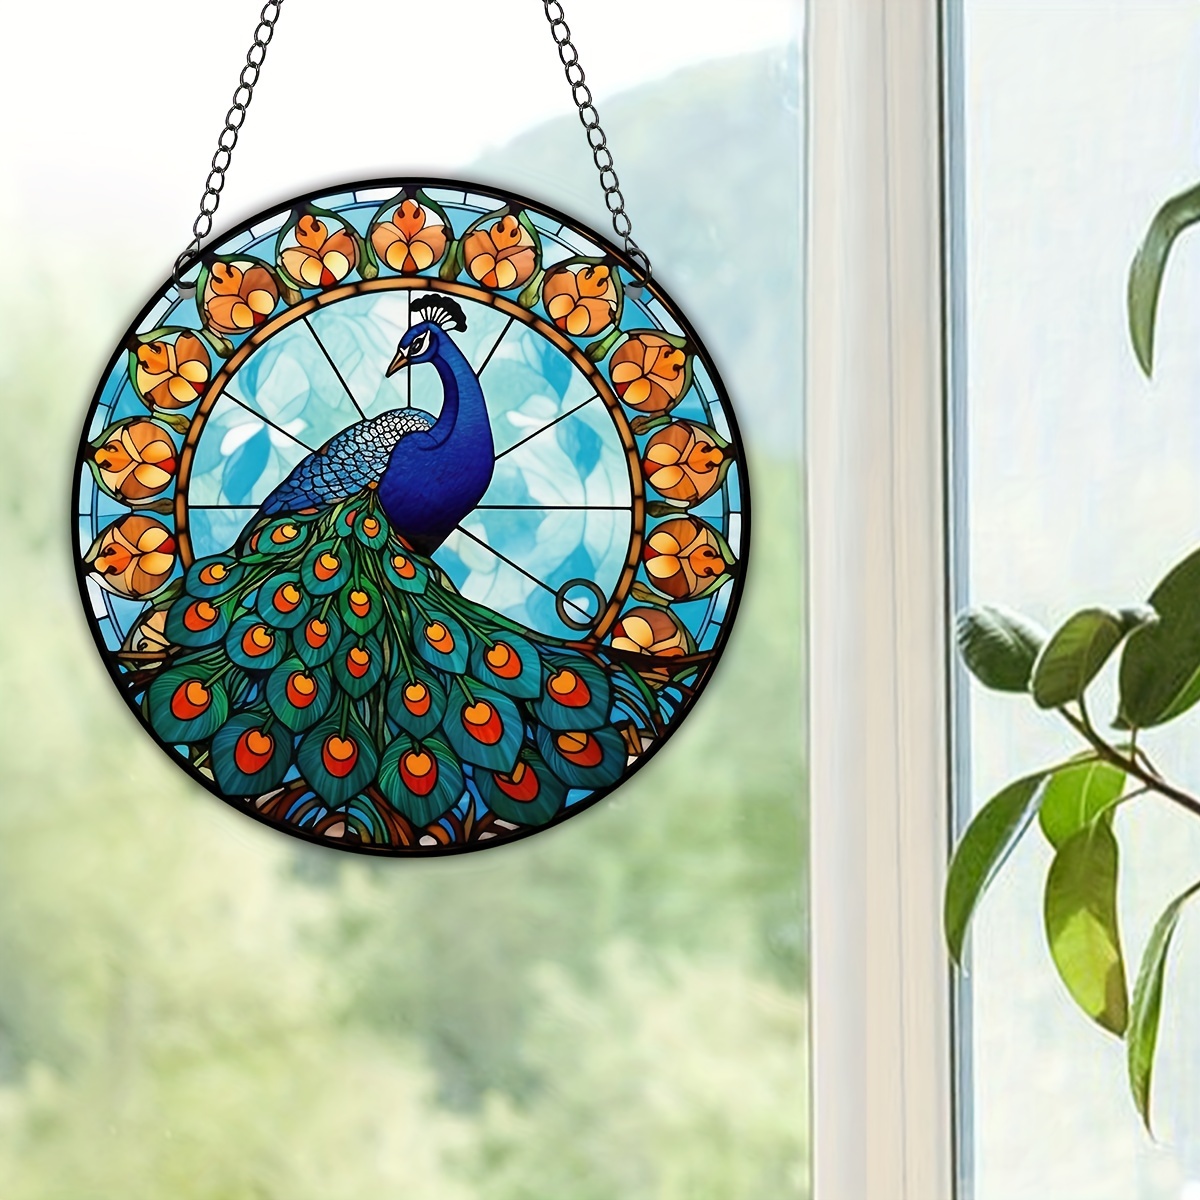 Viveta Attrape-soleil en vitrail à suspendre - Motif paon - Peint